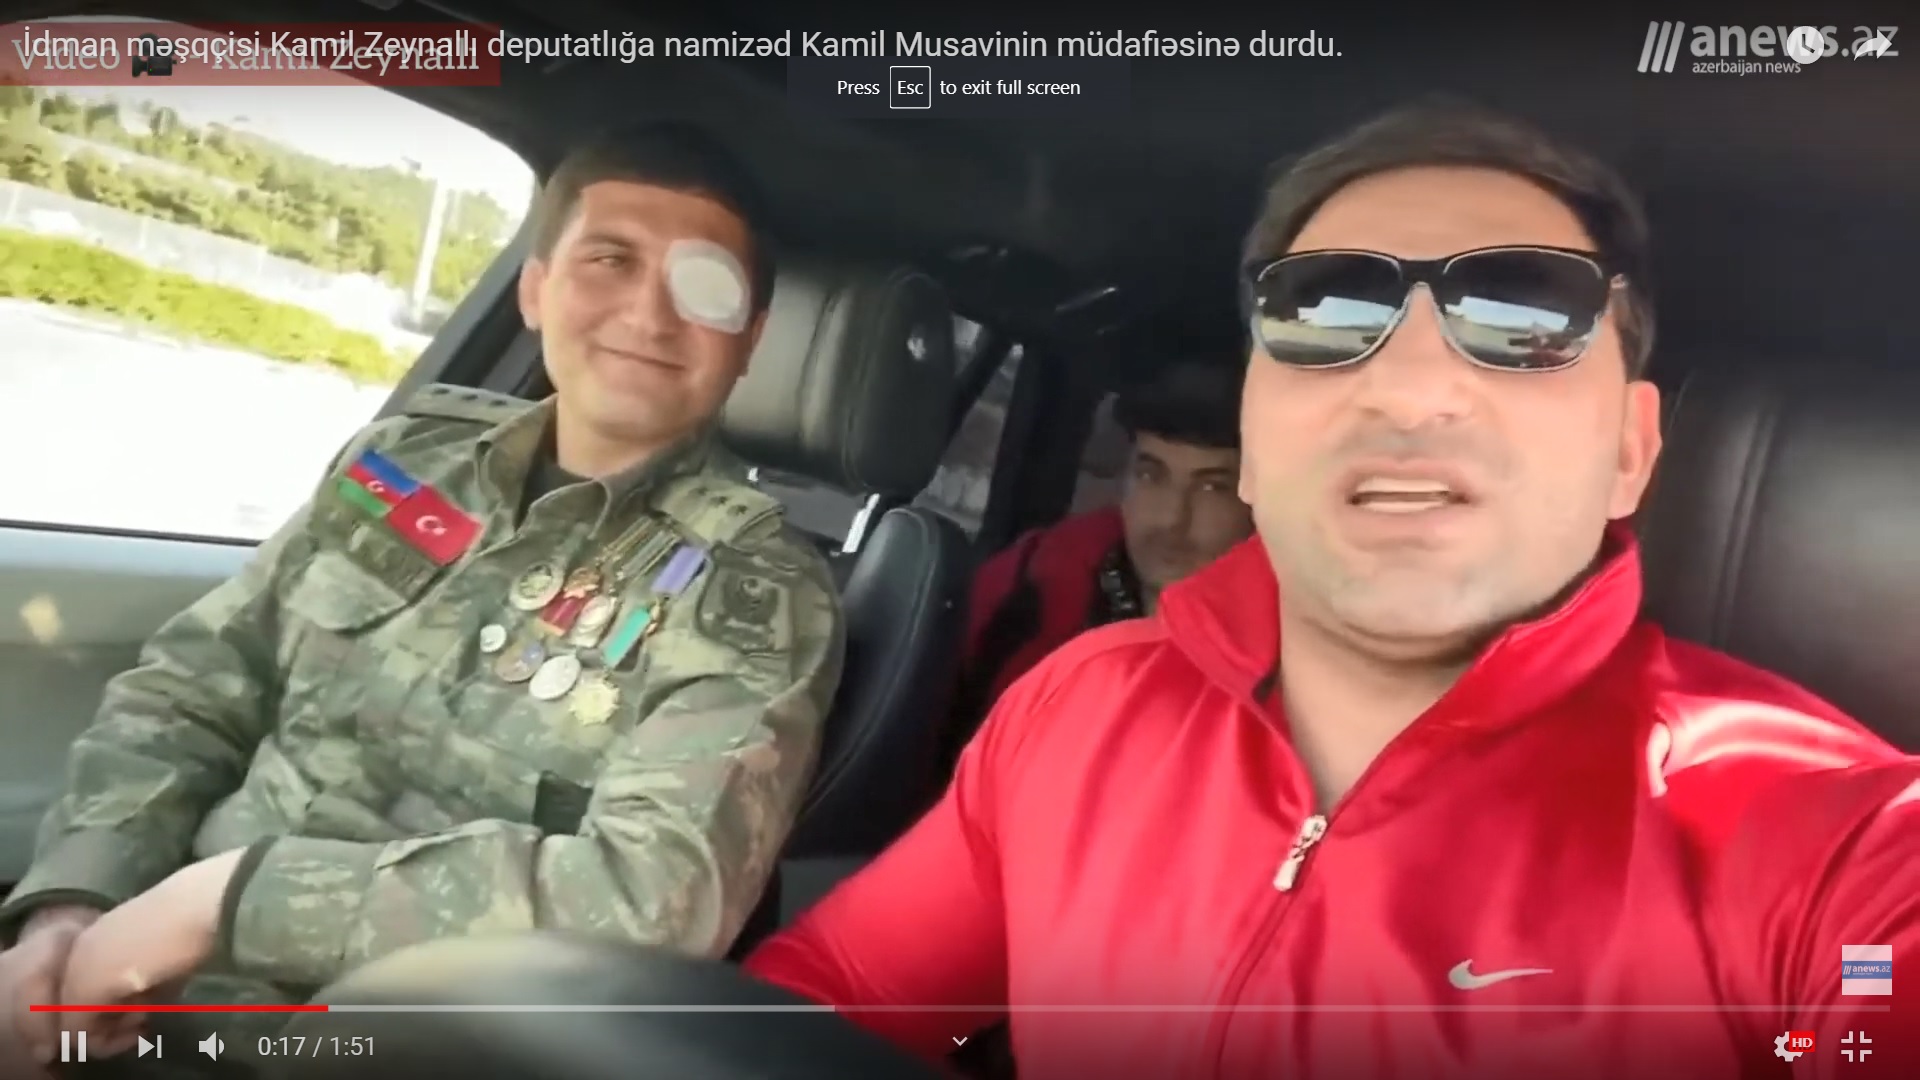 İdman məşqçisi Kamil Zeynallı  Kamil Musavinin müdafiəsinə durdu - VİDEO